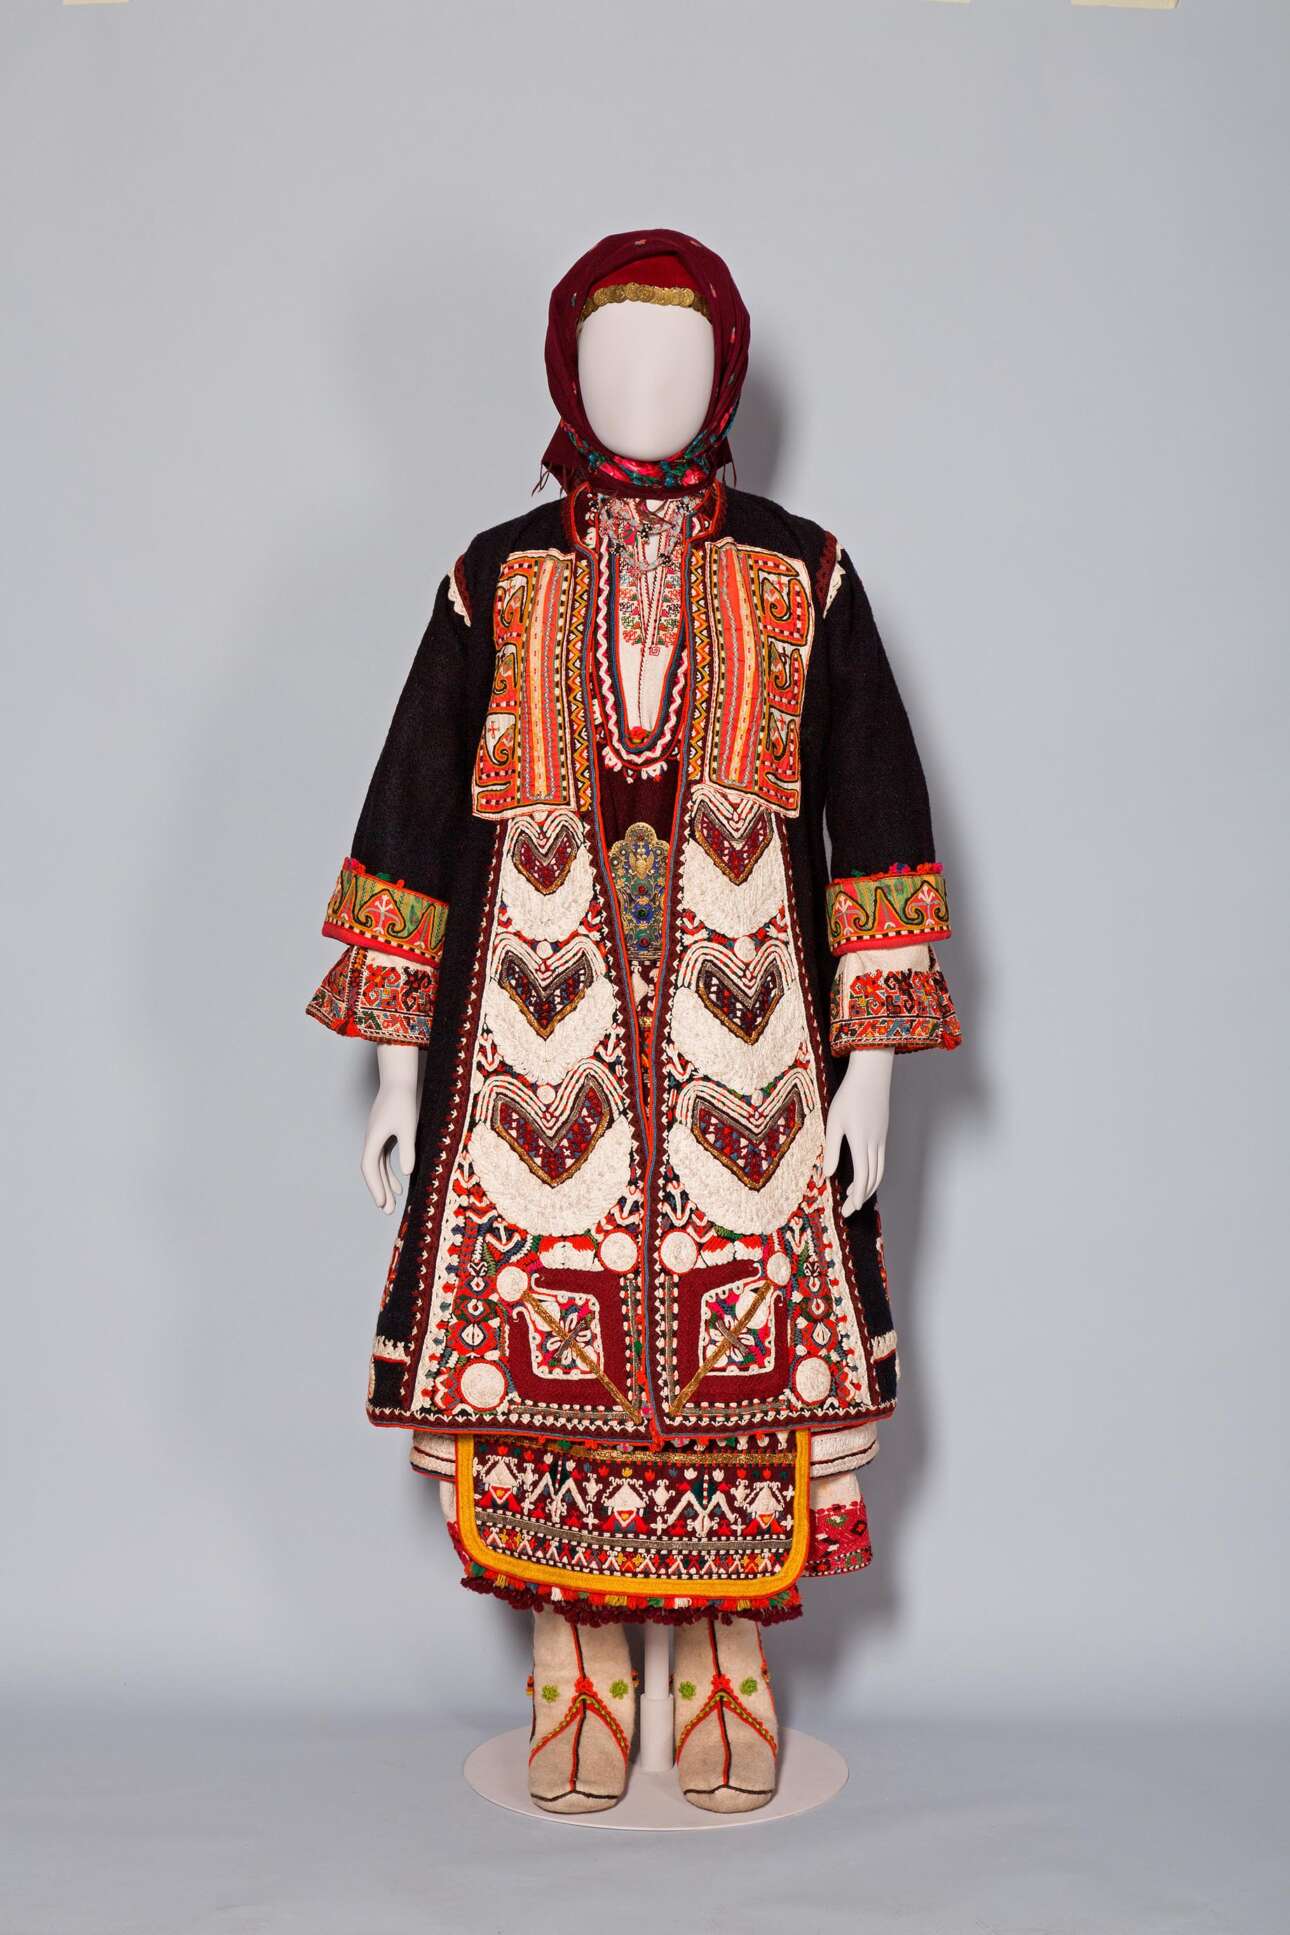 Νυφική φορεσιά από τα χωριά Μικρό και Μεγάλο Ζαλούφι, στην περιφέρεια της Mακράς Γέφυρας (Uzunköprü) στην Ανατολική Θράκη, τέλη του 19ου αιώνα